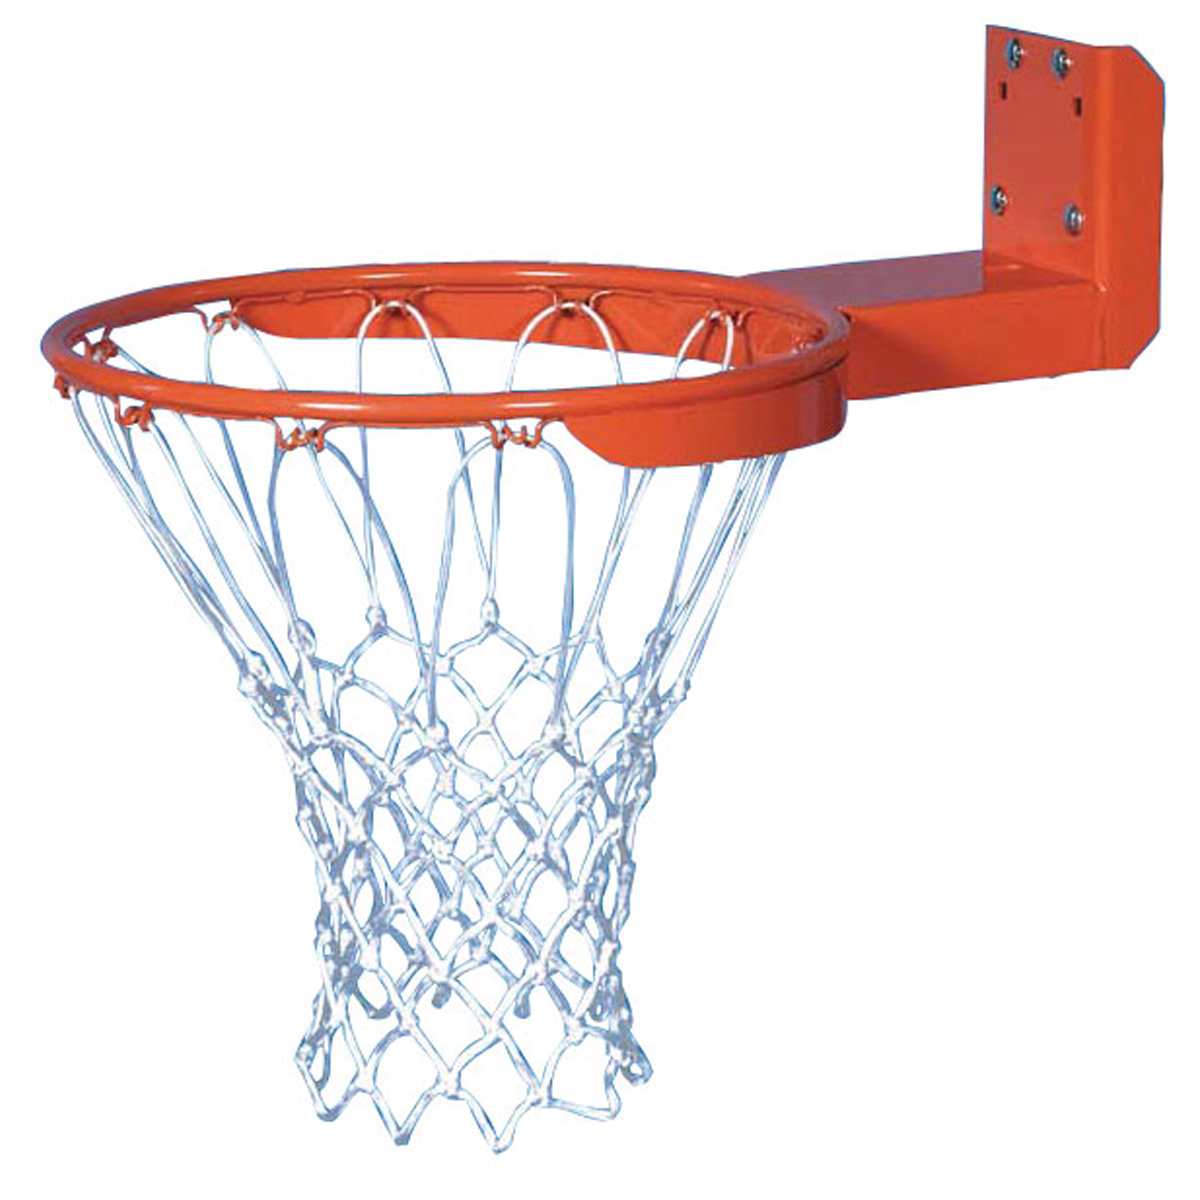 Gared H.D. Rear Mount Basketball Goal